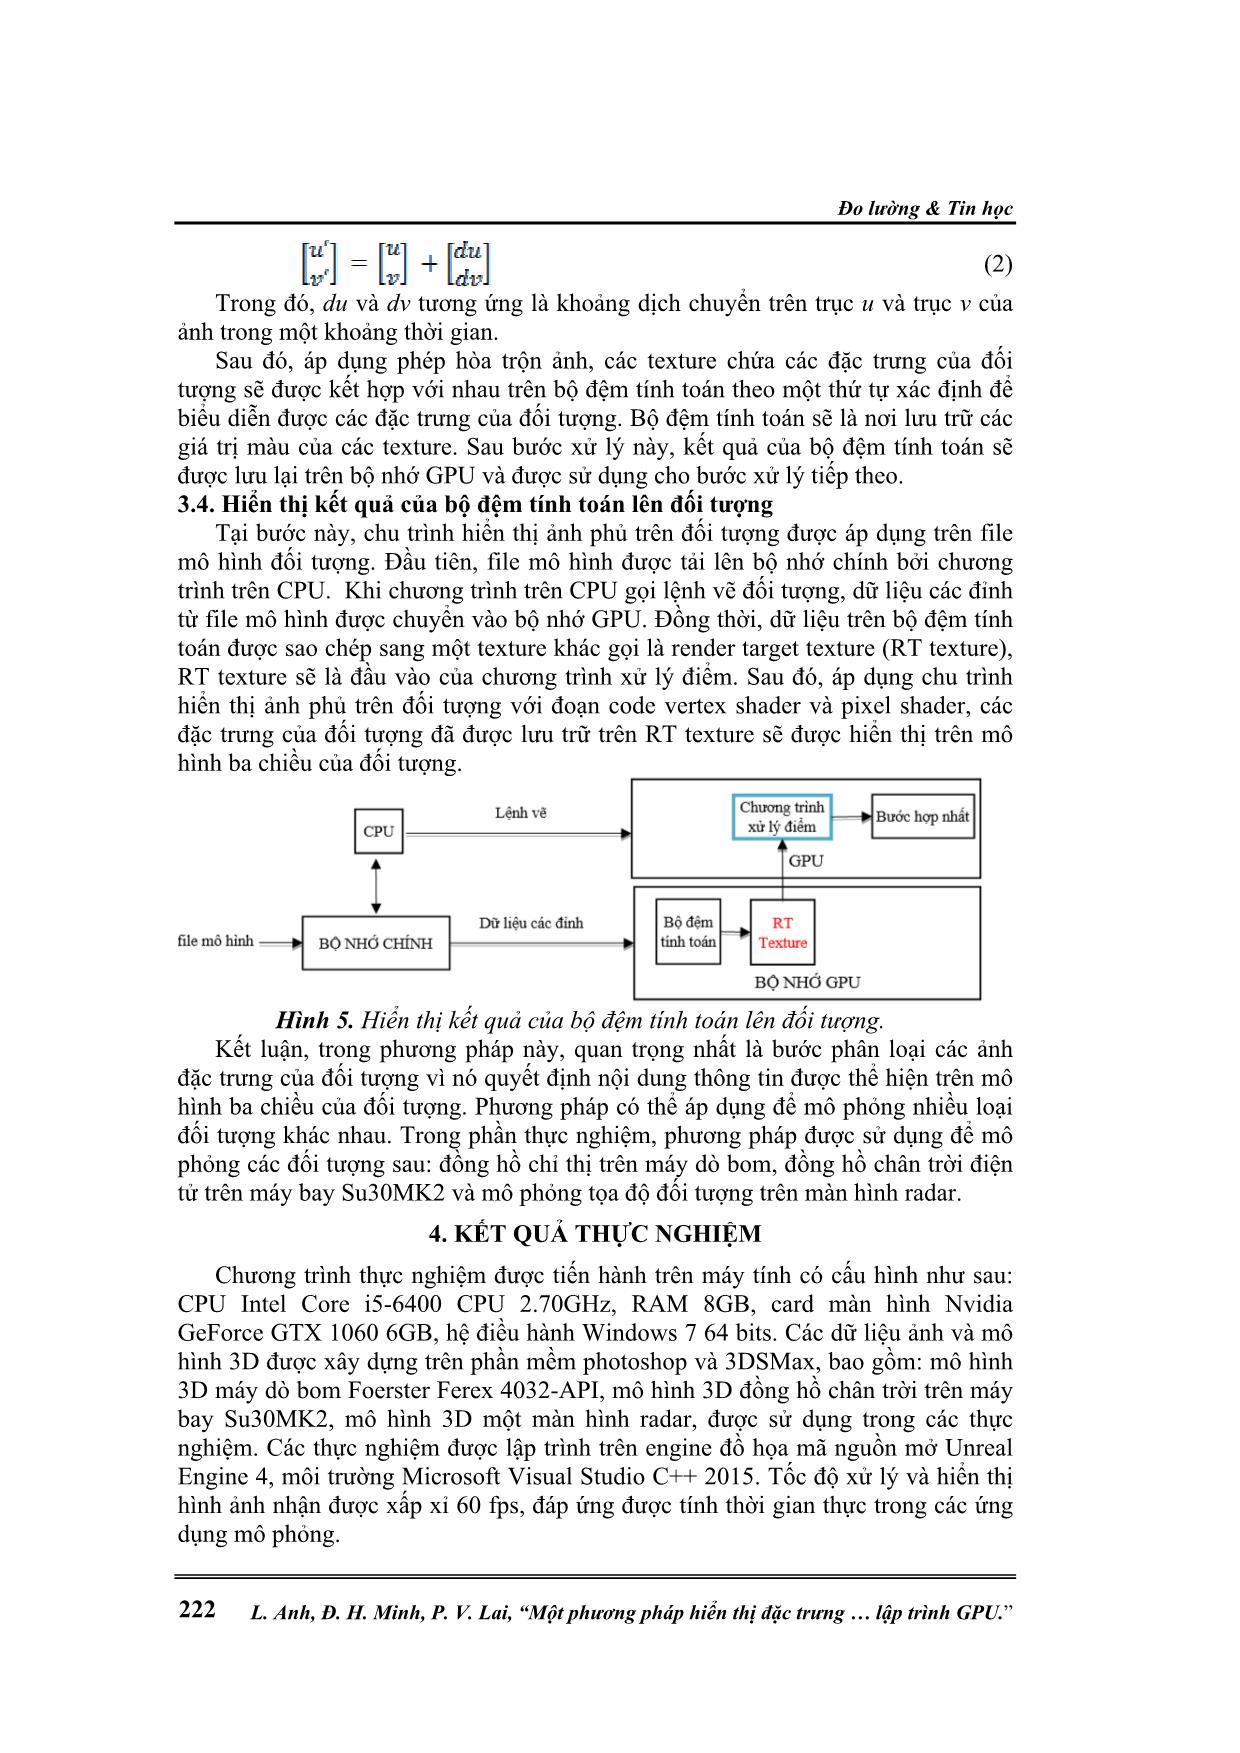 Một phương pháp hiển thị đặc trưng trên đối tượng ảo ba chiều dựa trên công nghệ lập trình GPU trang 5